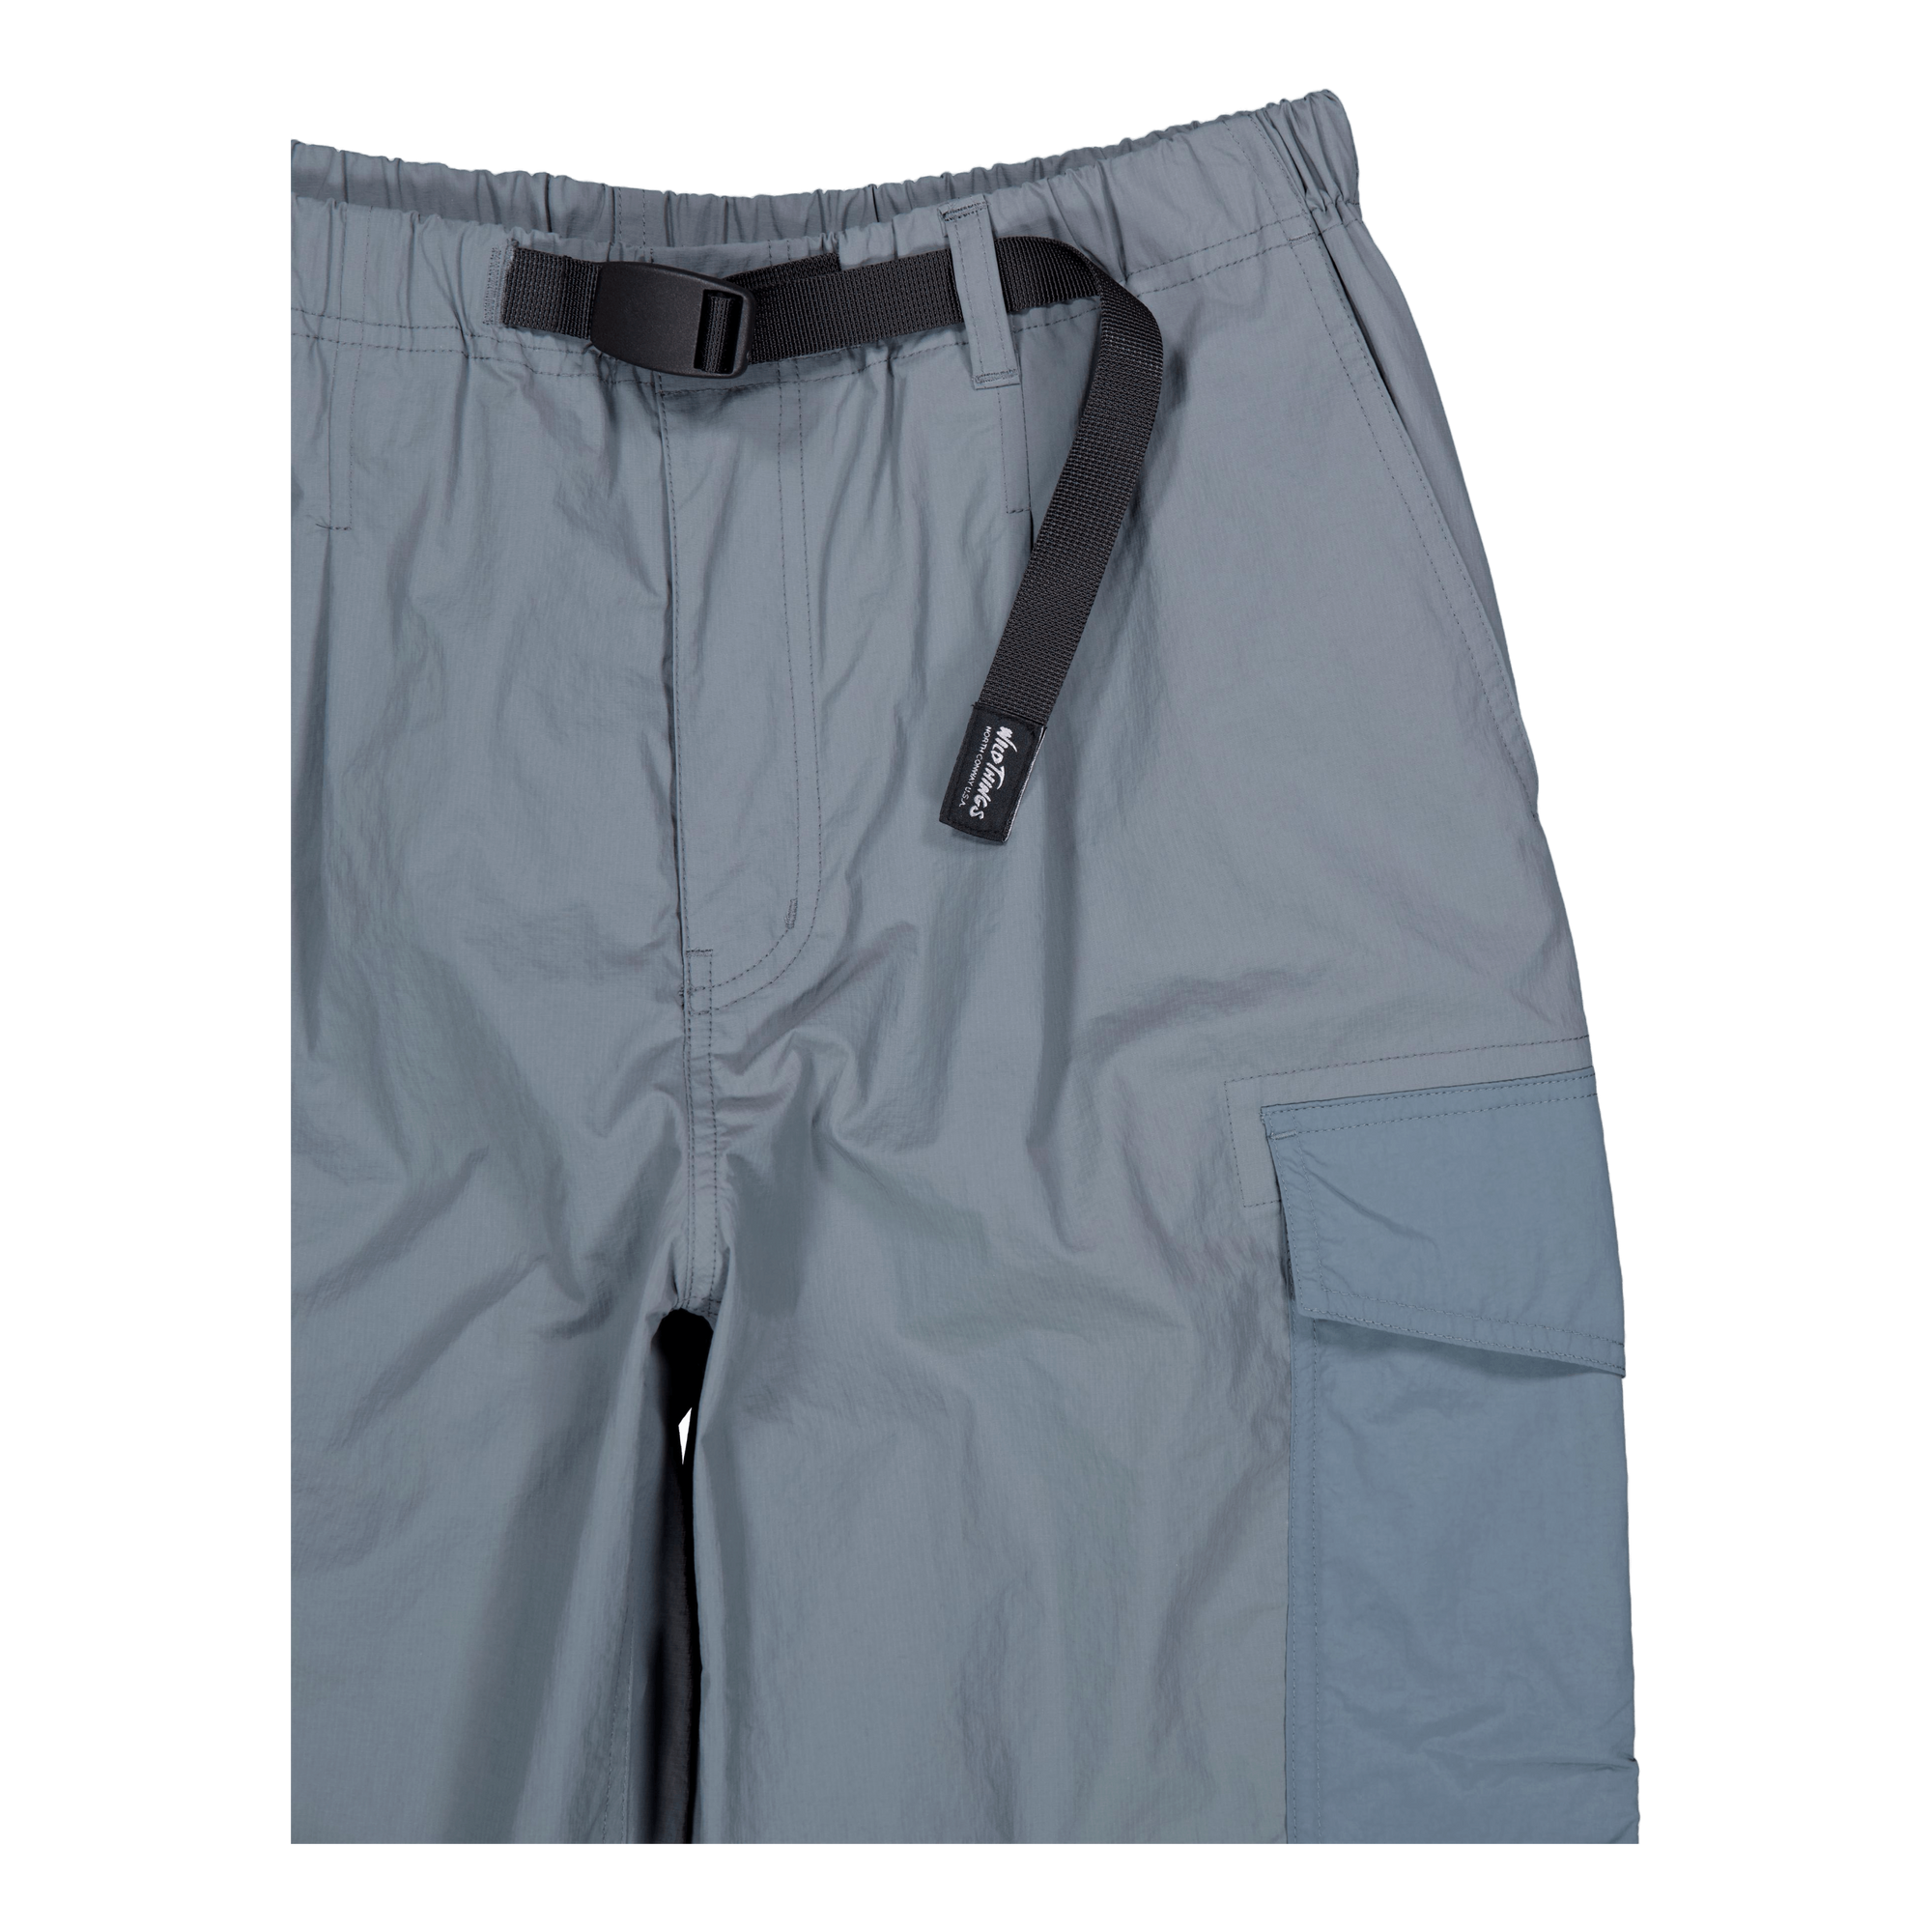 Backstain Field Cargo Pants Grey